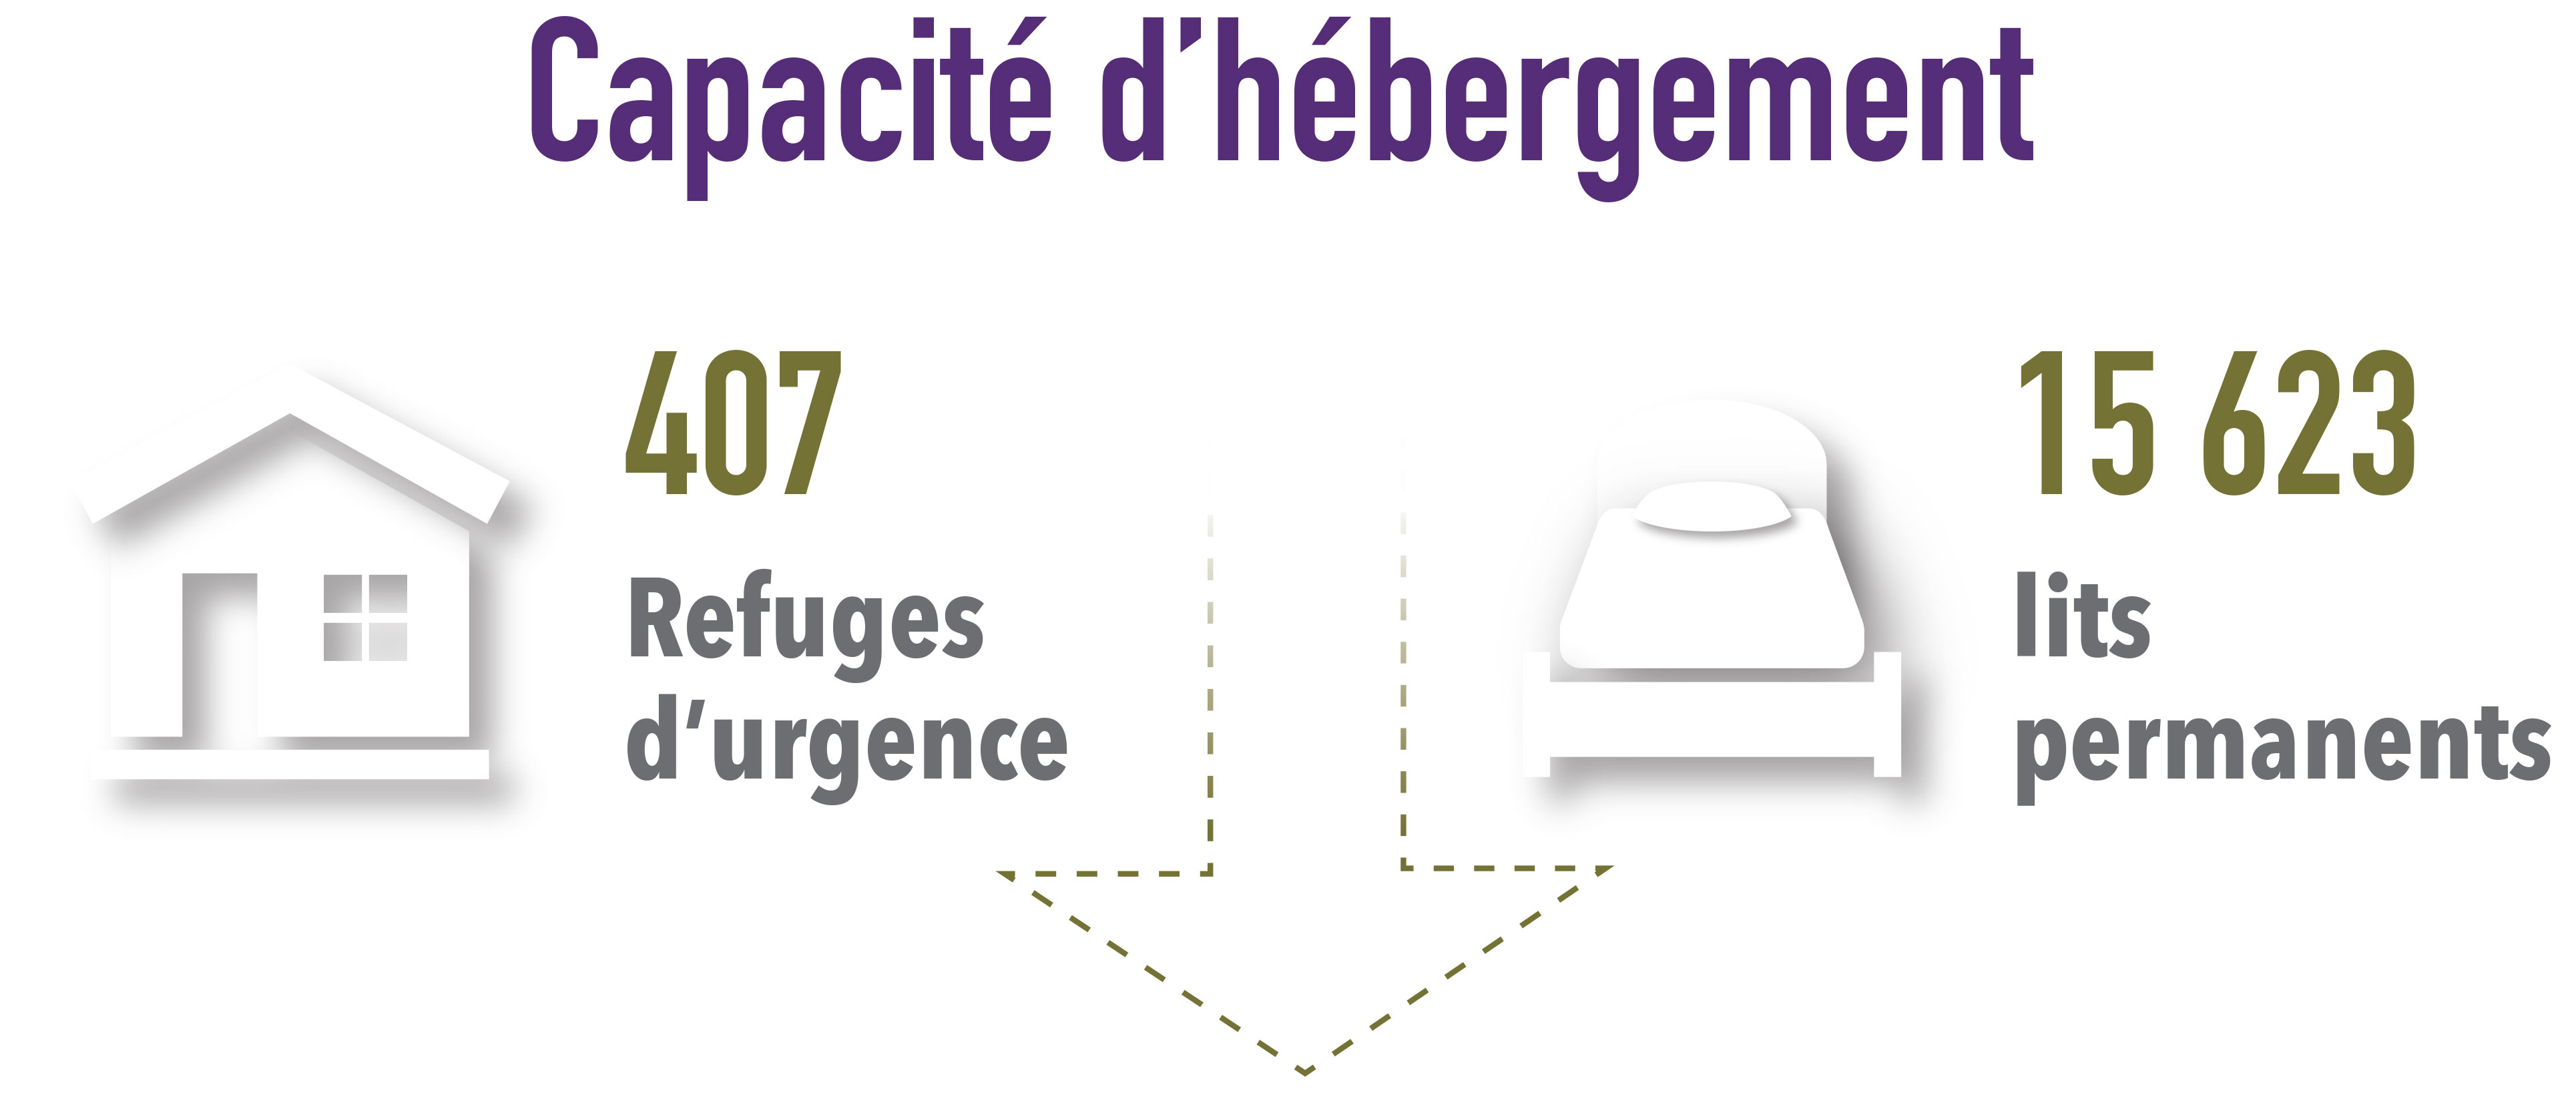 Au Canada, il y a 407 refuges d’urgence et 15 623 lits permanents.